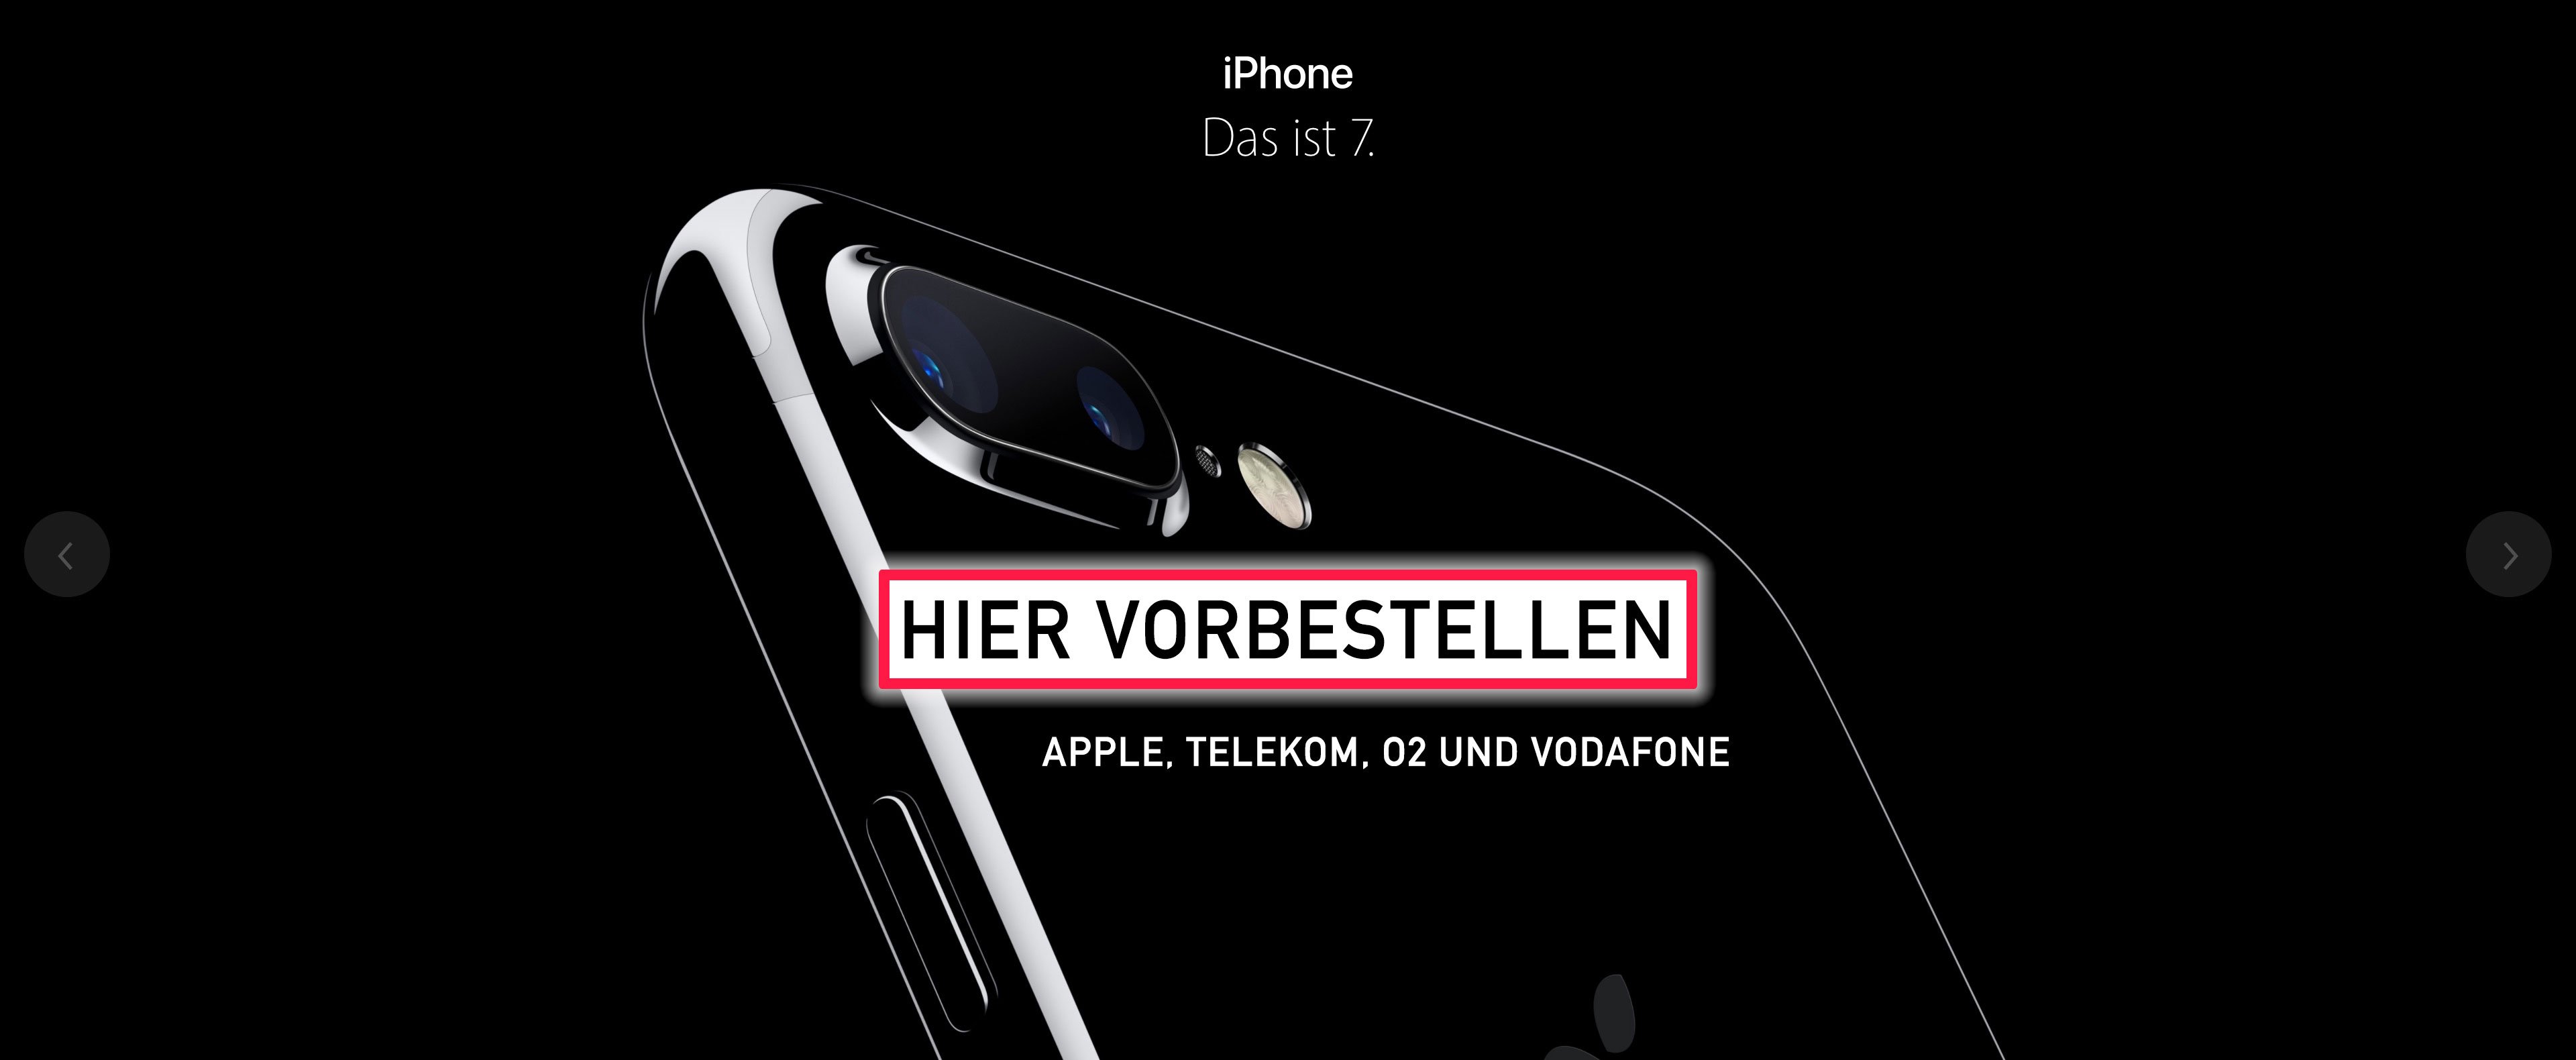 Apple iPhone 7: Reservierung und Abholung am 17. September möglich 2